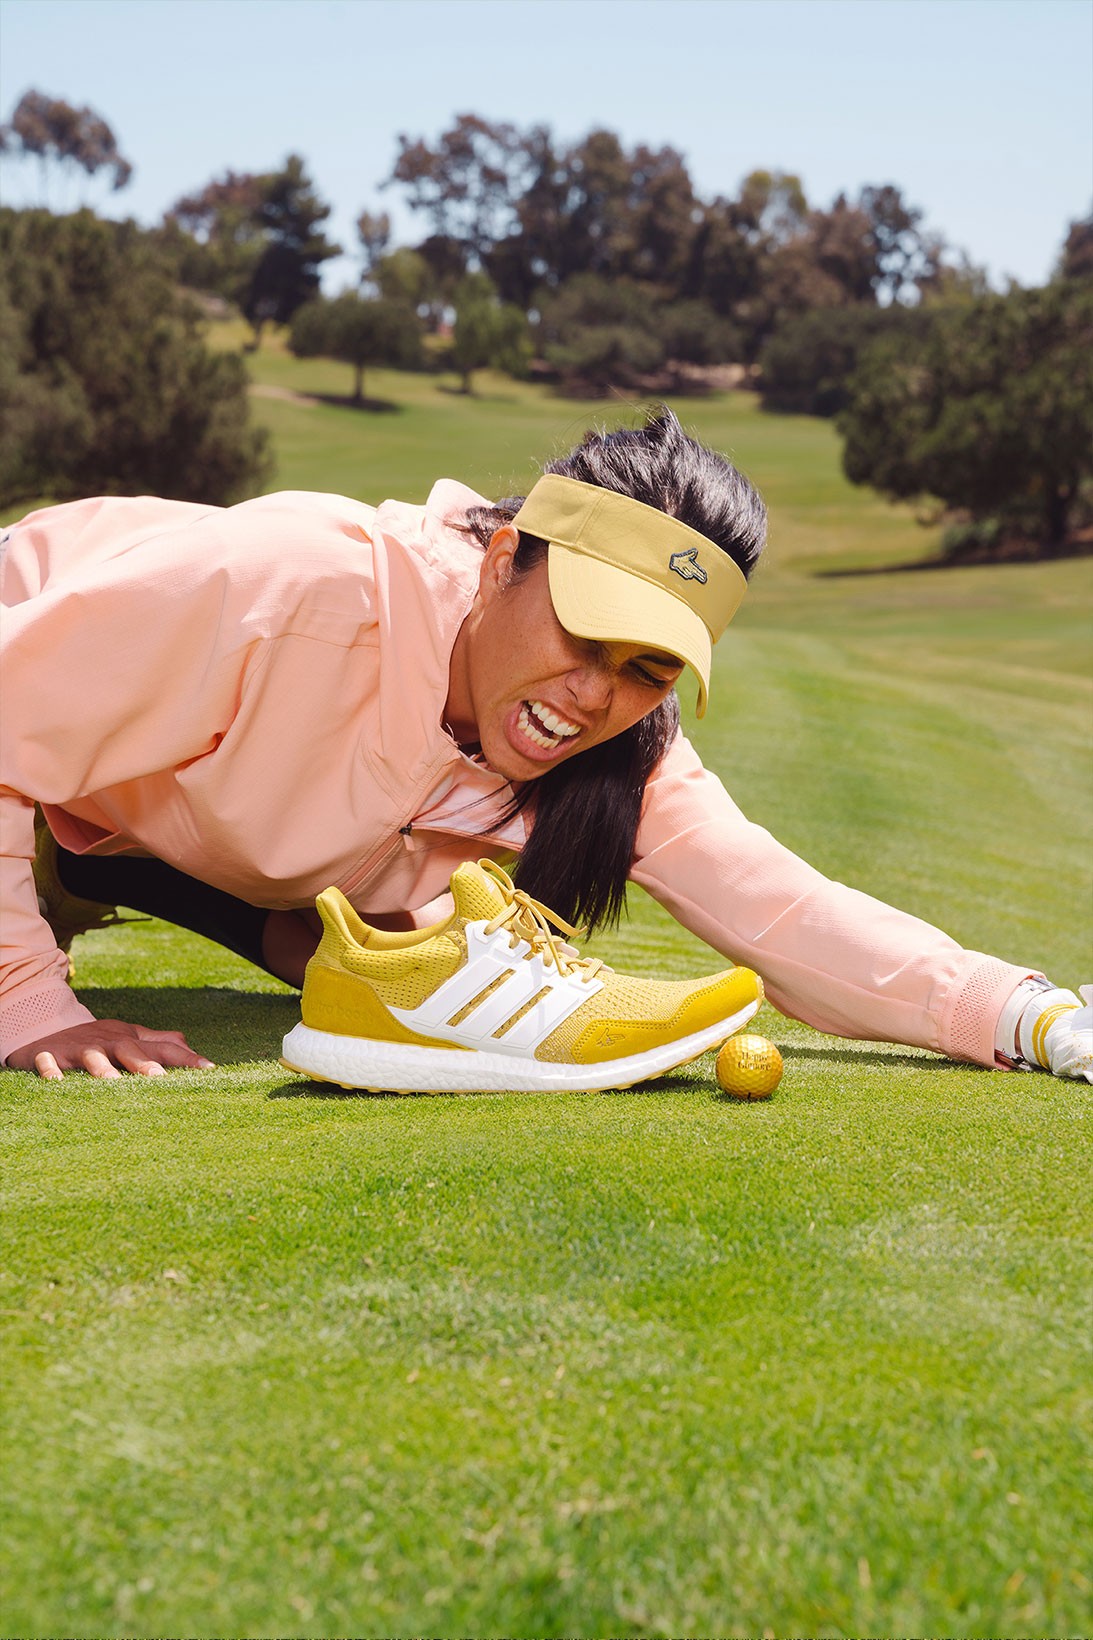 adidas выпустил гольф-коллекцию в стиле комедии «Счастливчик Гилмор» (фото 20)